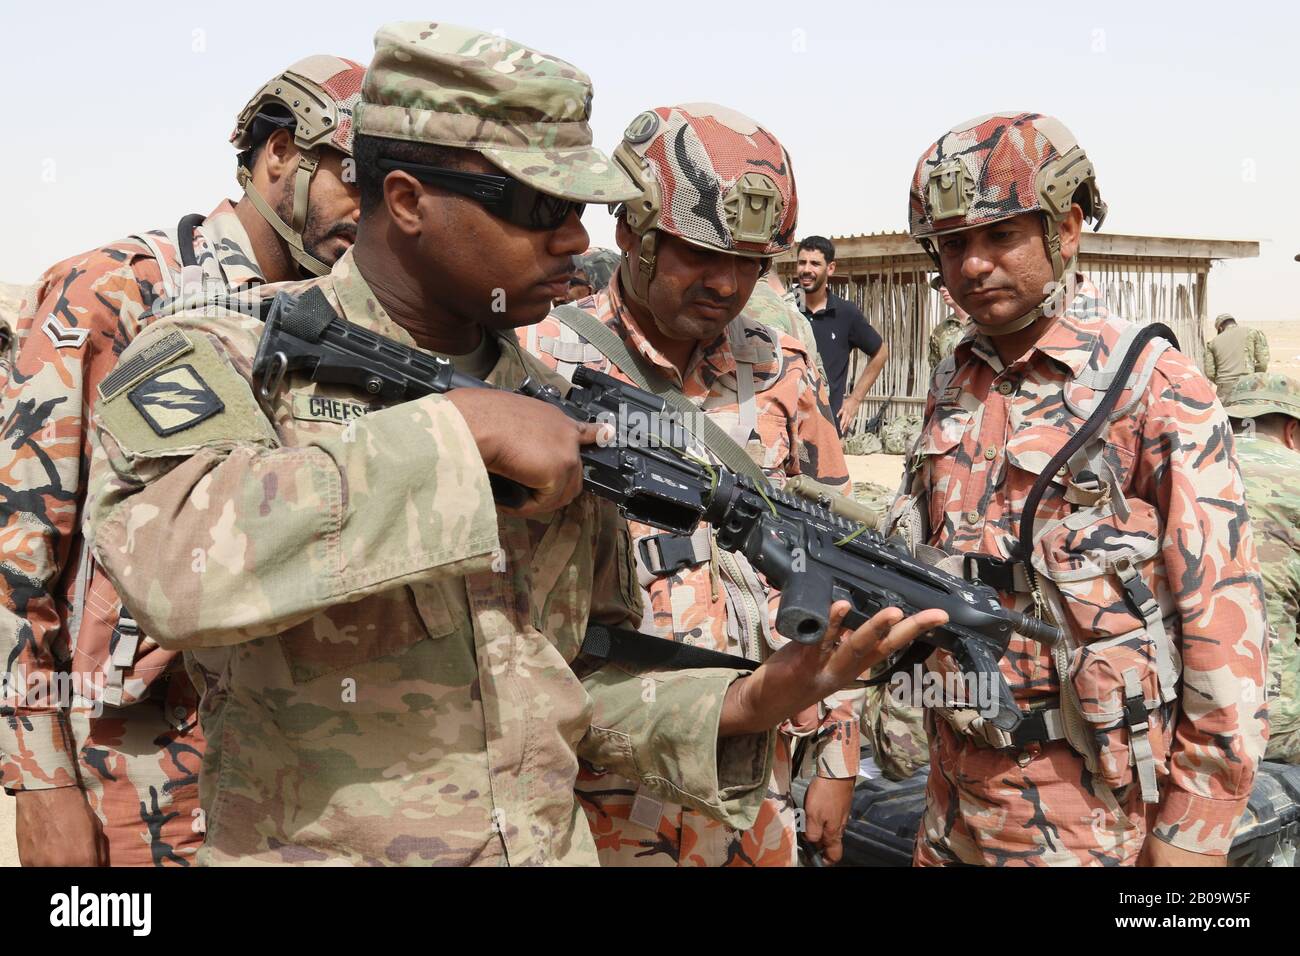 Cps de l'armée américaine. Reginald Cheeseboro, de la 155ème équipe de combat de la Brigade blindée, à gauche, montre aux soldats omanais sa carabine M 4 à une portée de fusil le 20 janvier 2019 à Thumrait, Oman. Banque D'Images